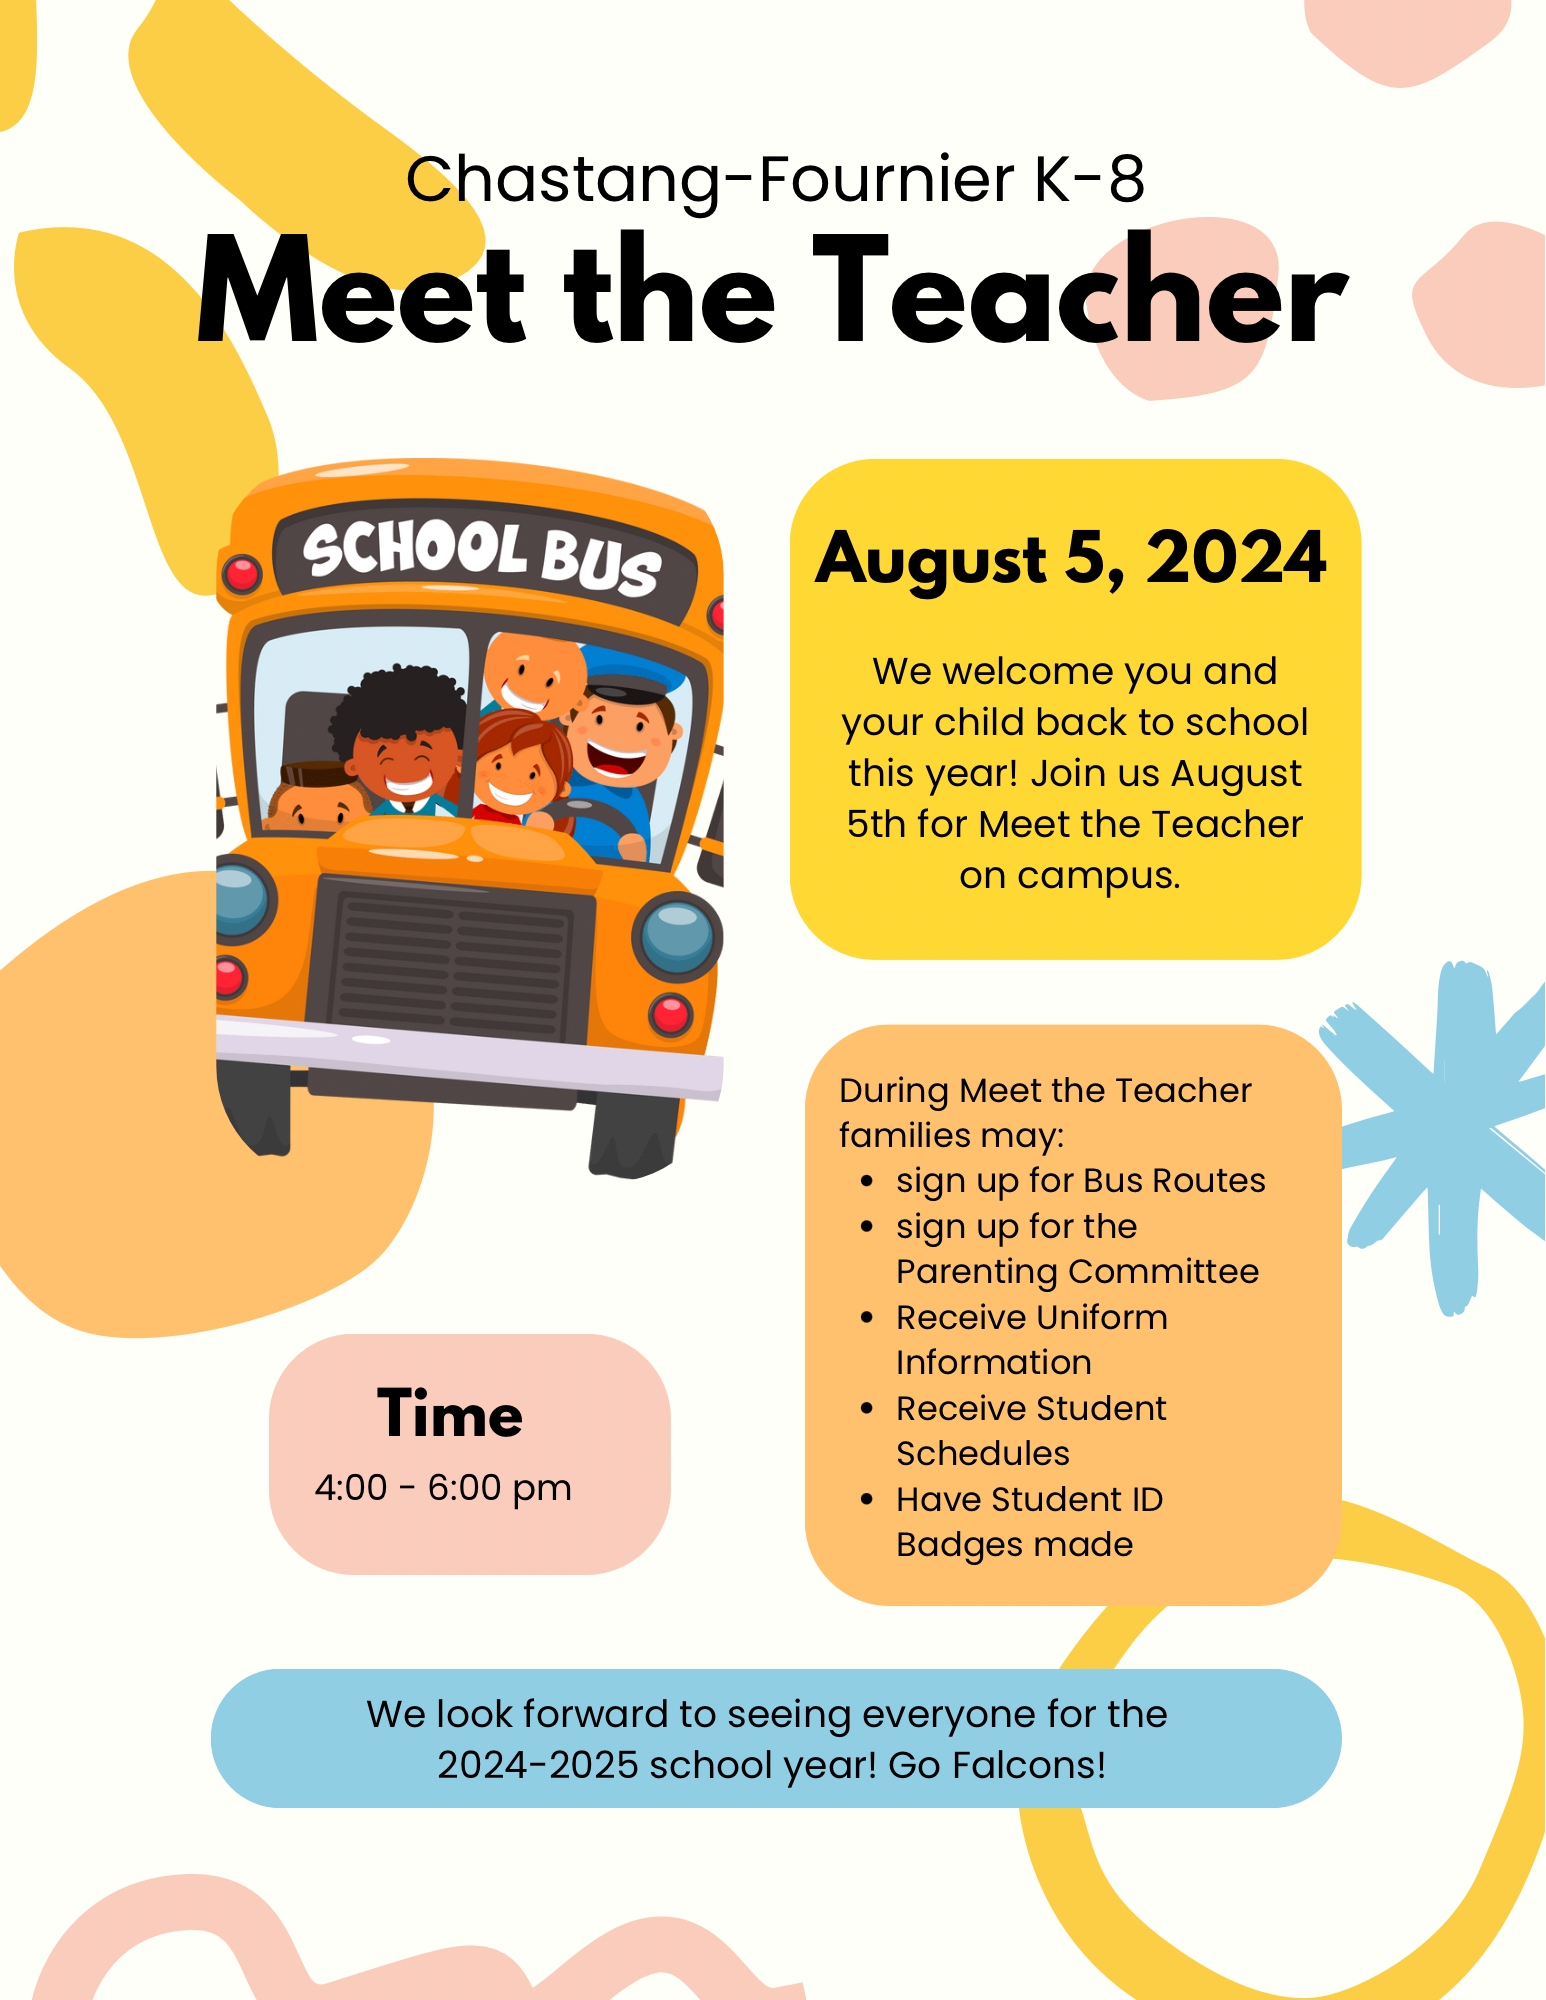 Meet the Teacher Friday, August 5